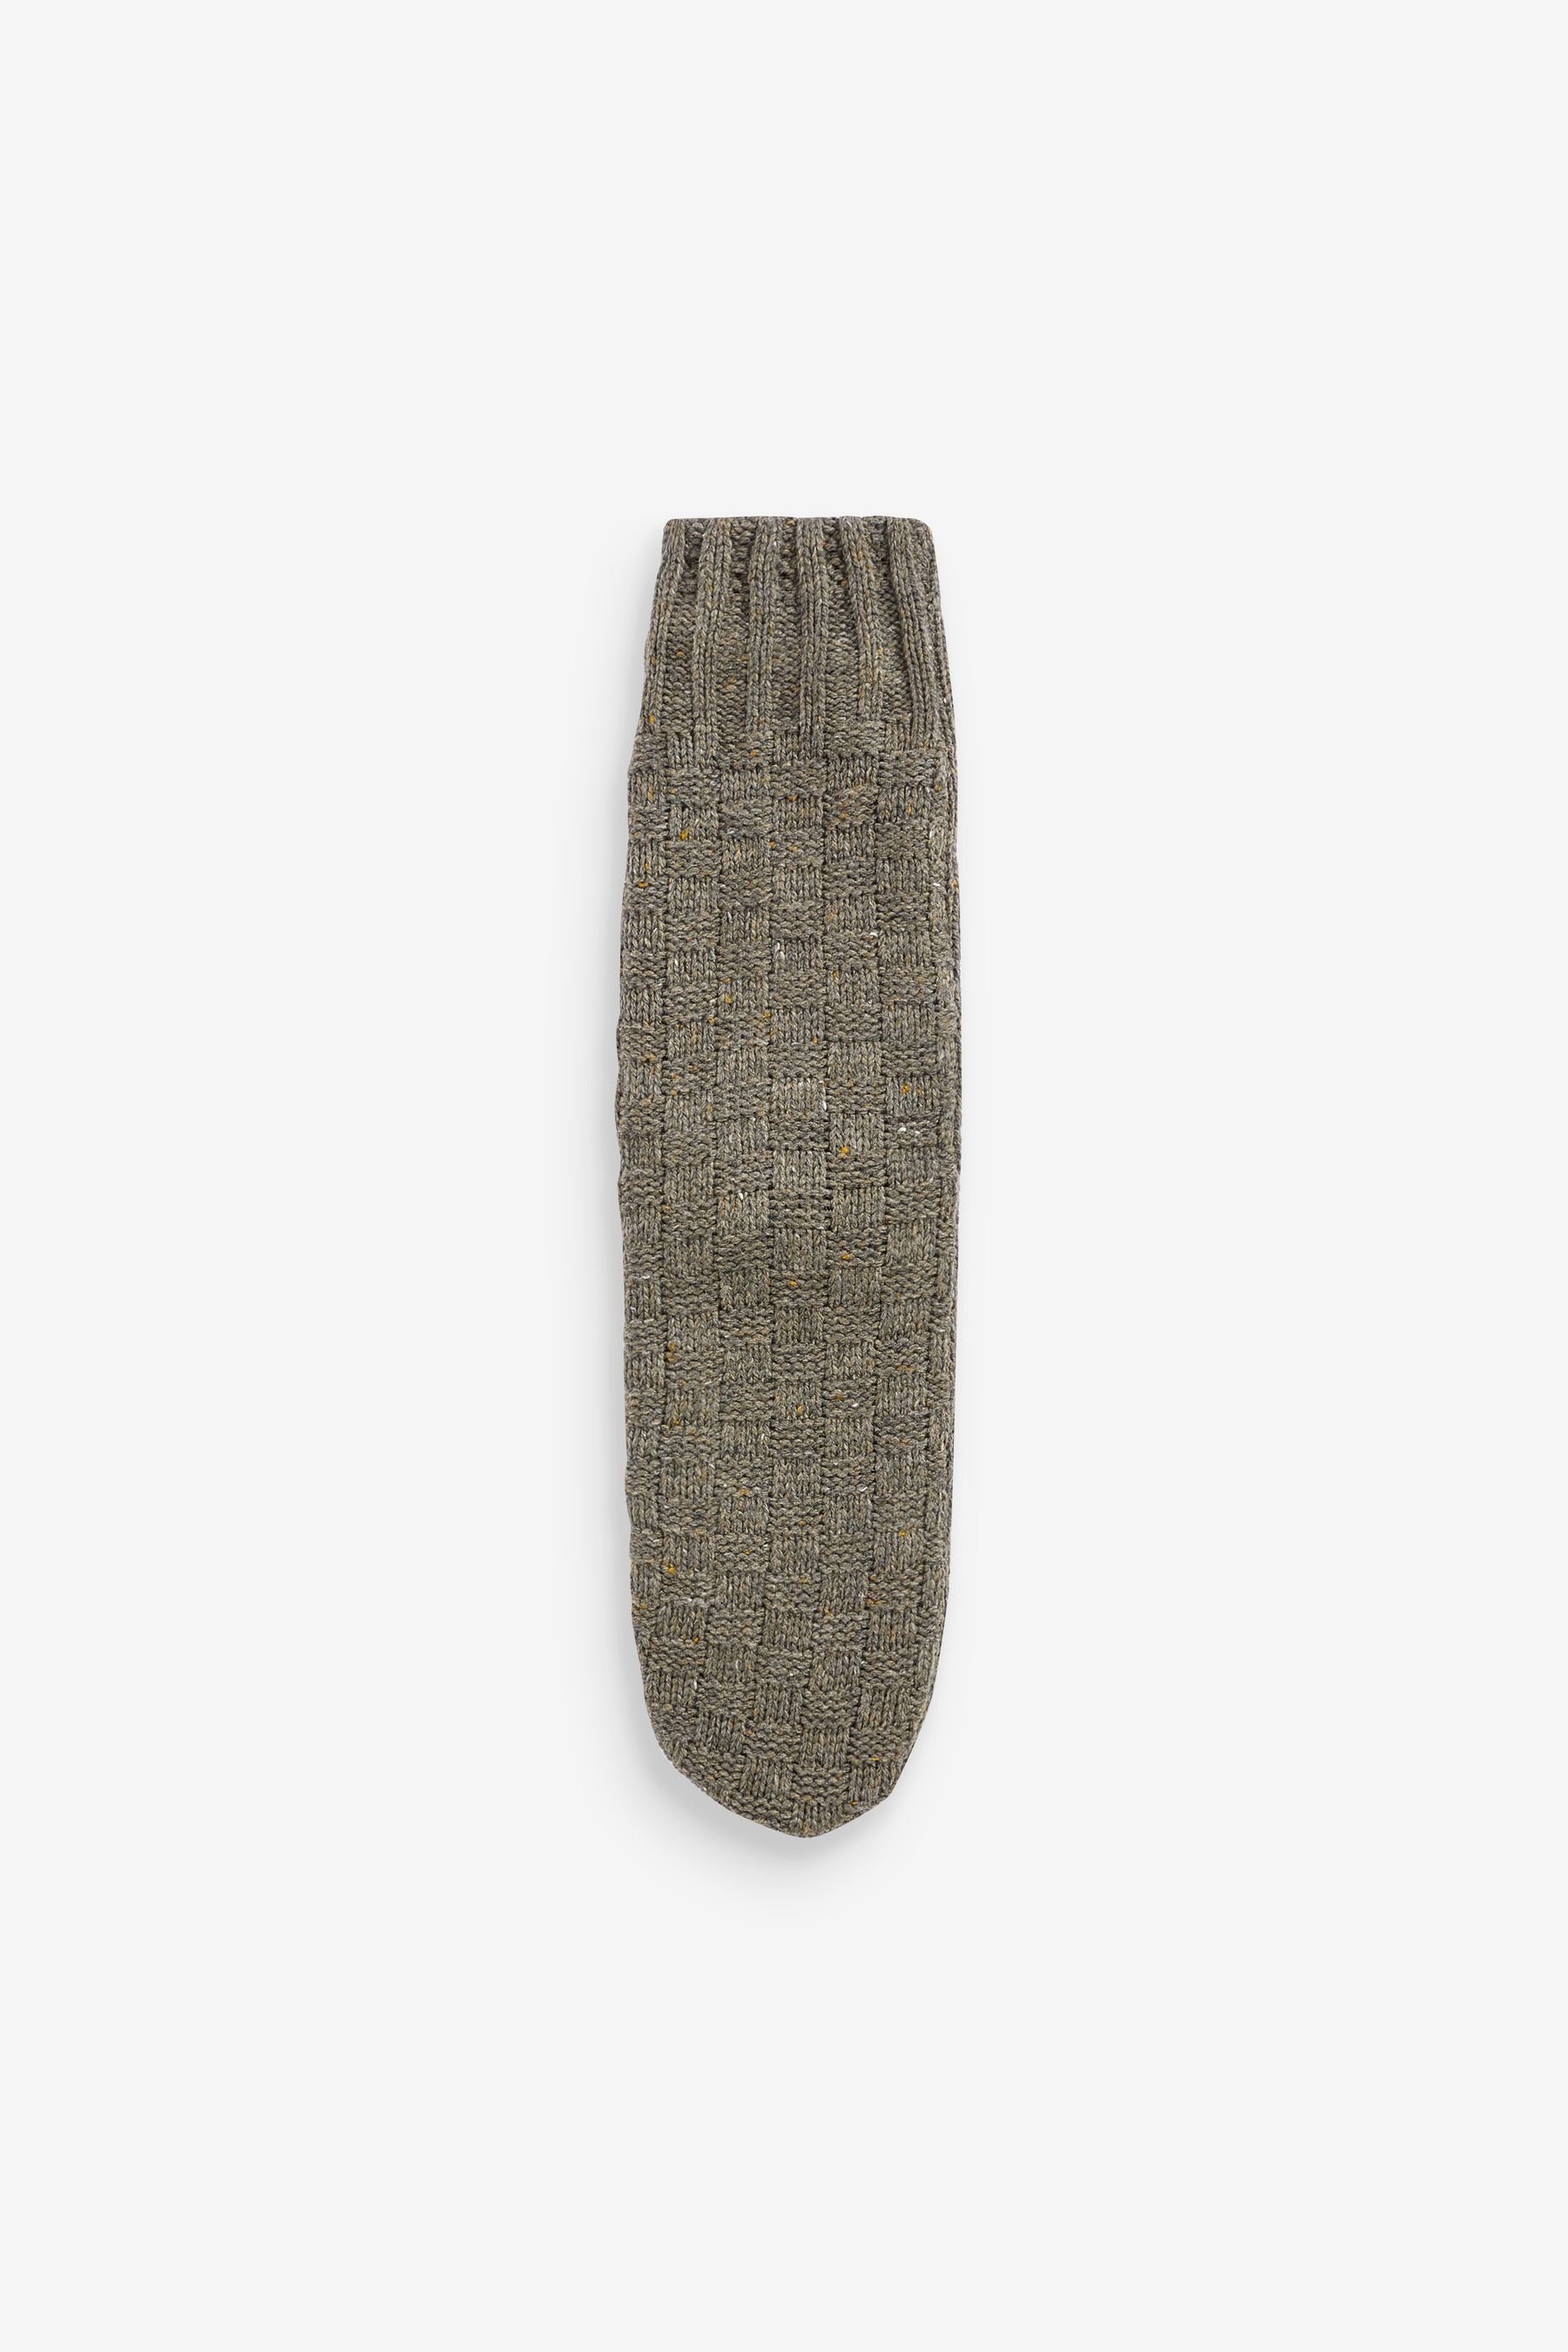 (1-Paar) Next Neutral Slipper-Socken Zopfmuster Weave Texture mit Basket Haussocken